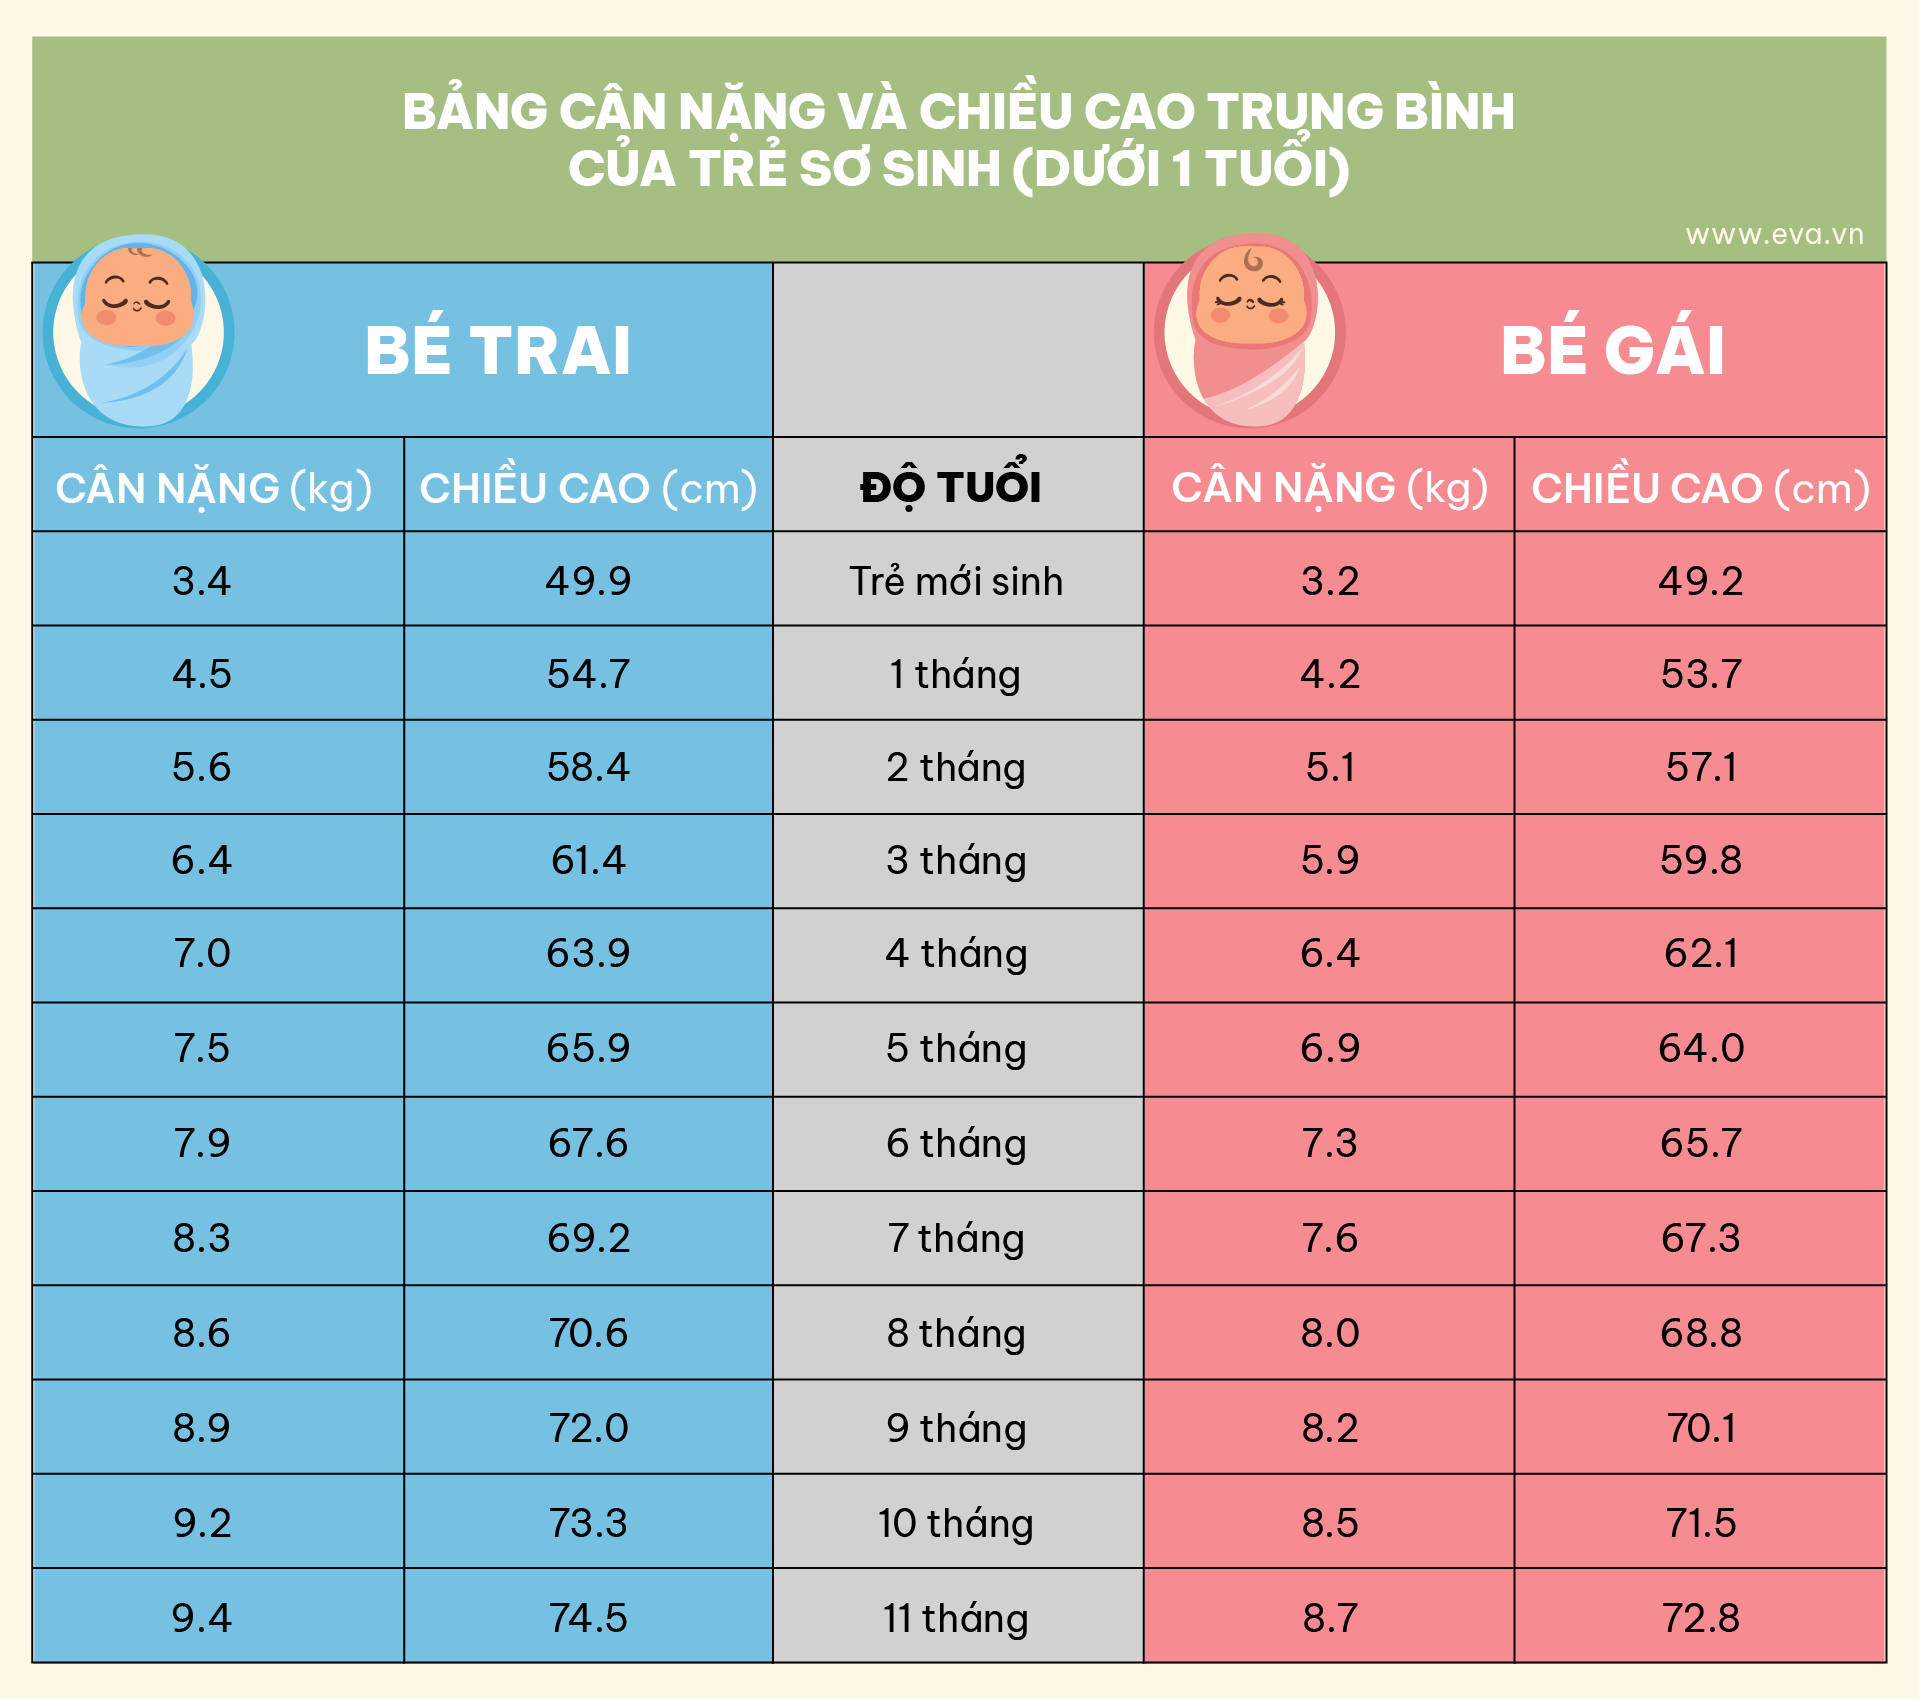 Infographic: Bảng cân nặng và chiều cao của trẻ từ lúc sinh đến 8 tuổi - 3